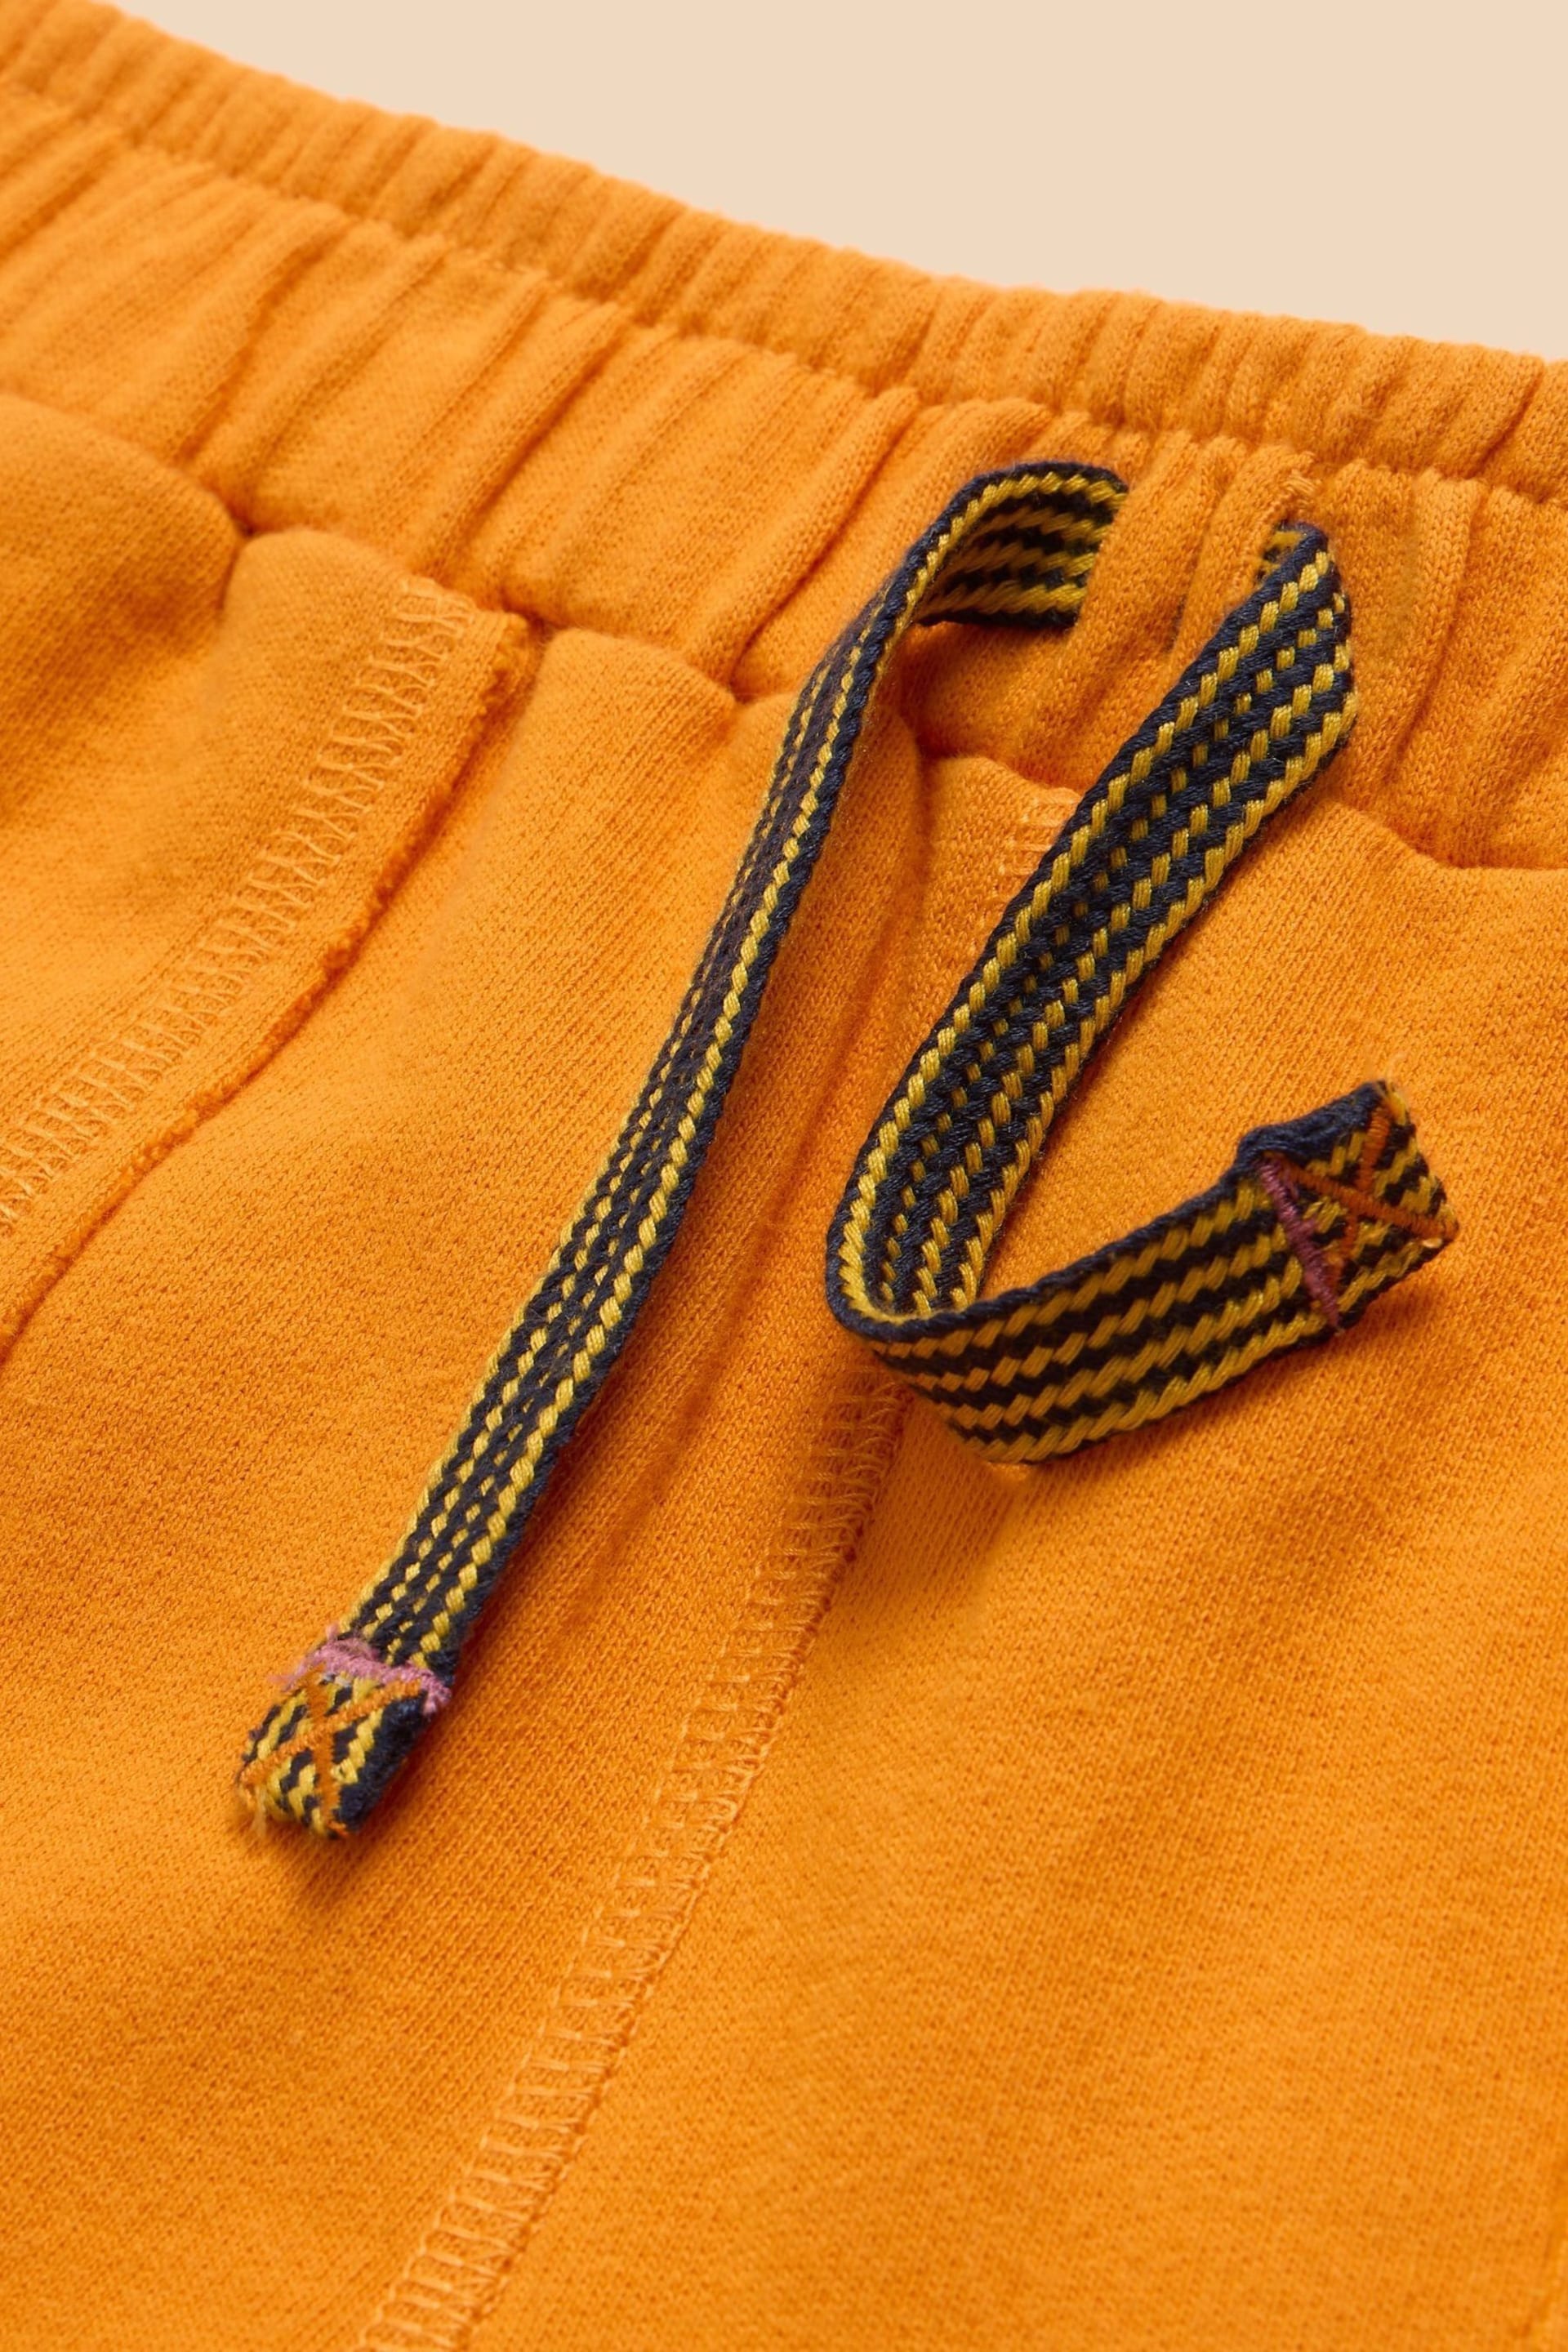 White Stuff Orange Jersey Shorts - Image 3 of 3